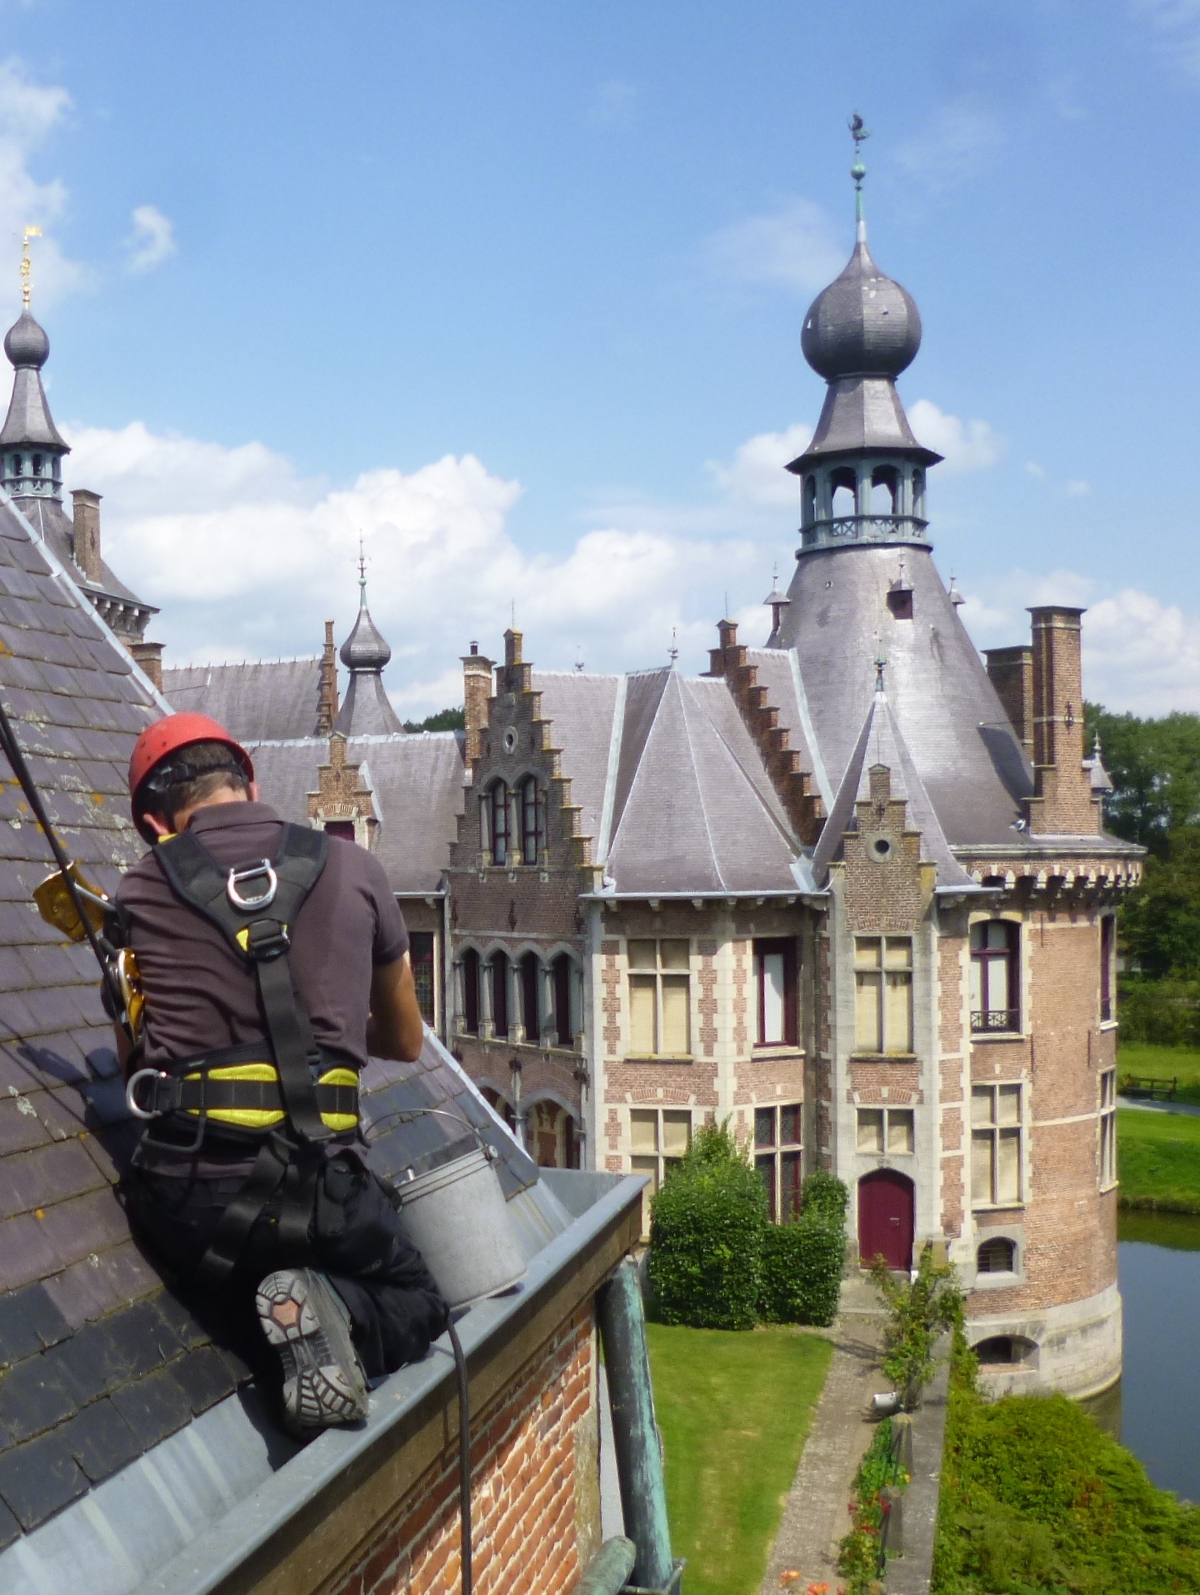 Onderhoud aan het dak van een kasteel